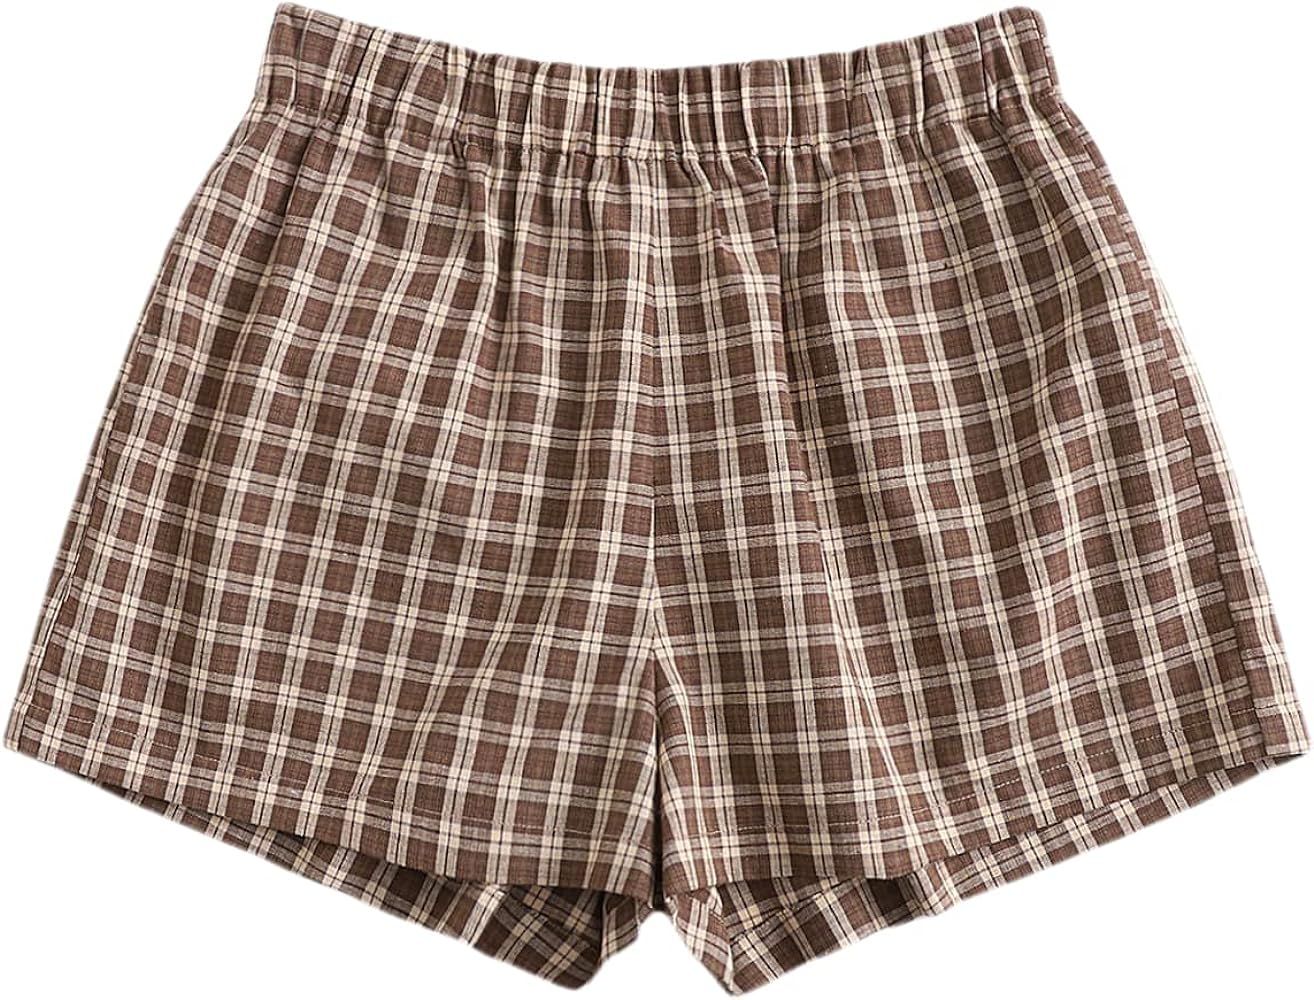 MakeMeChic Women's Elastic Waisted Plaid Shorts Lounge Pajama Shorts | Amazon (CA)